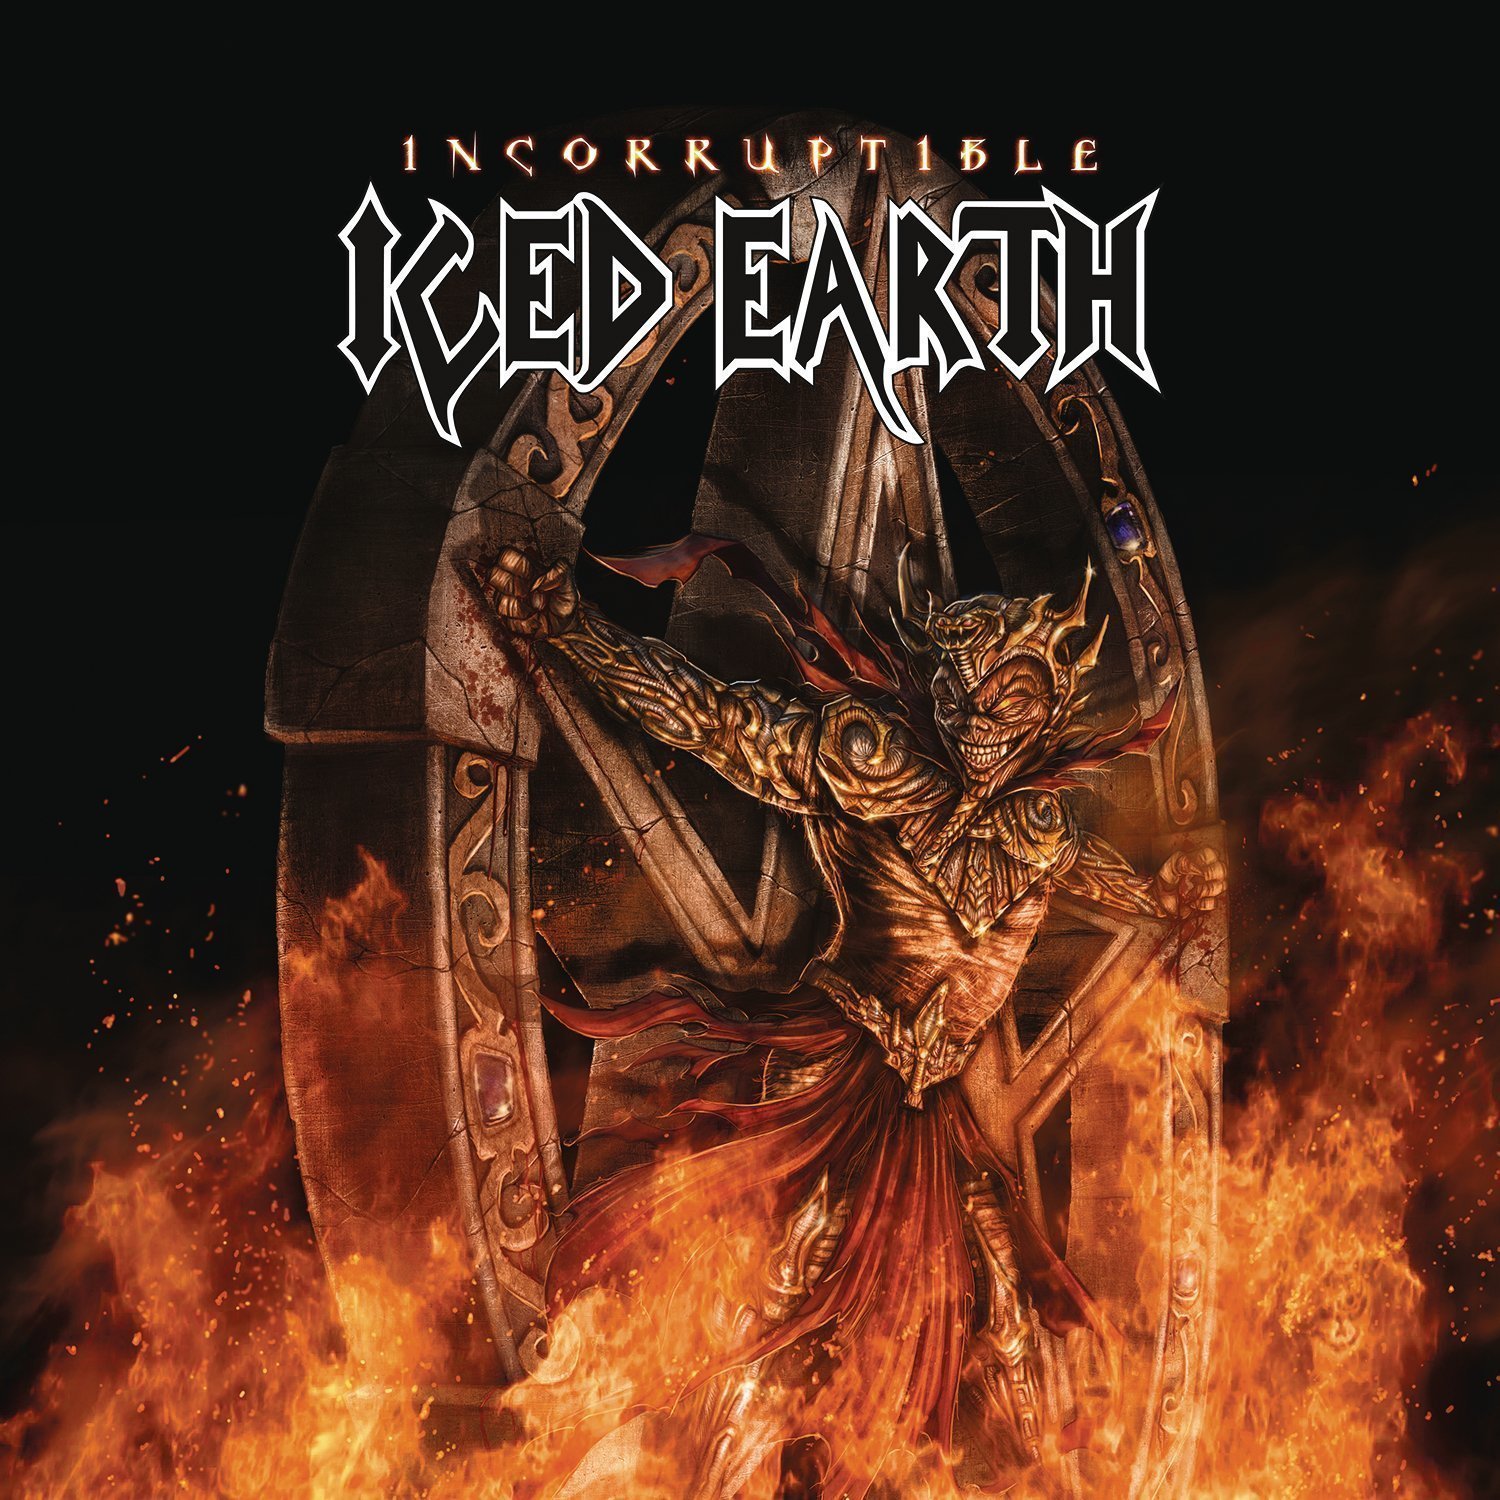 Δίσκος LP Iced Earth Incorruptible (2 LP)